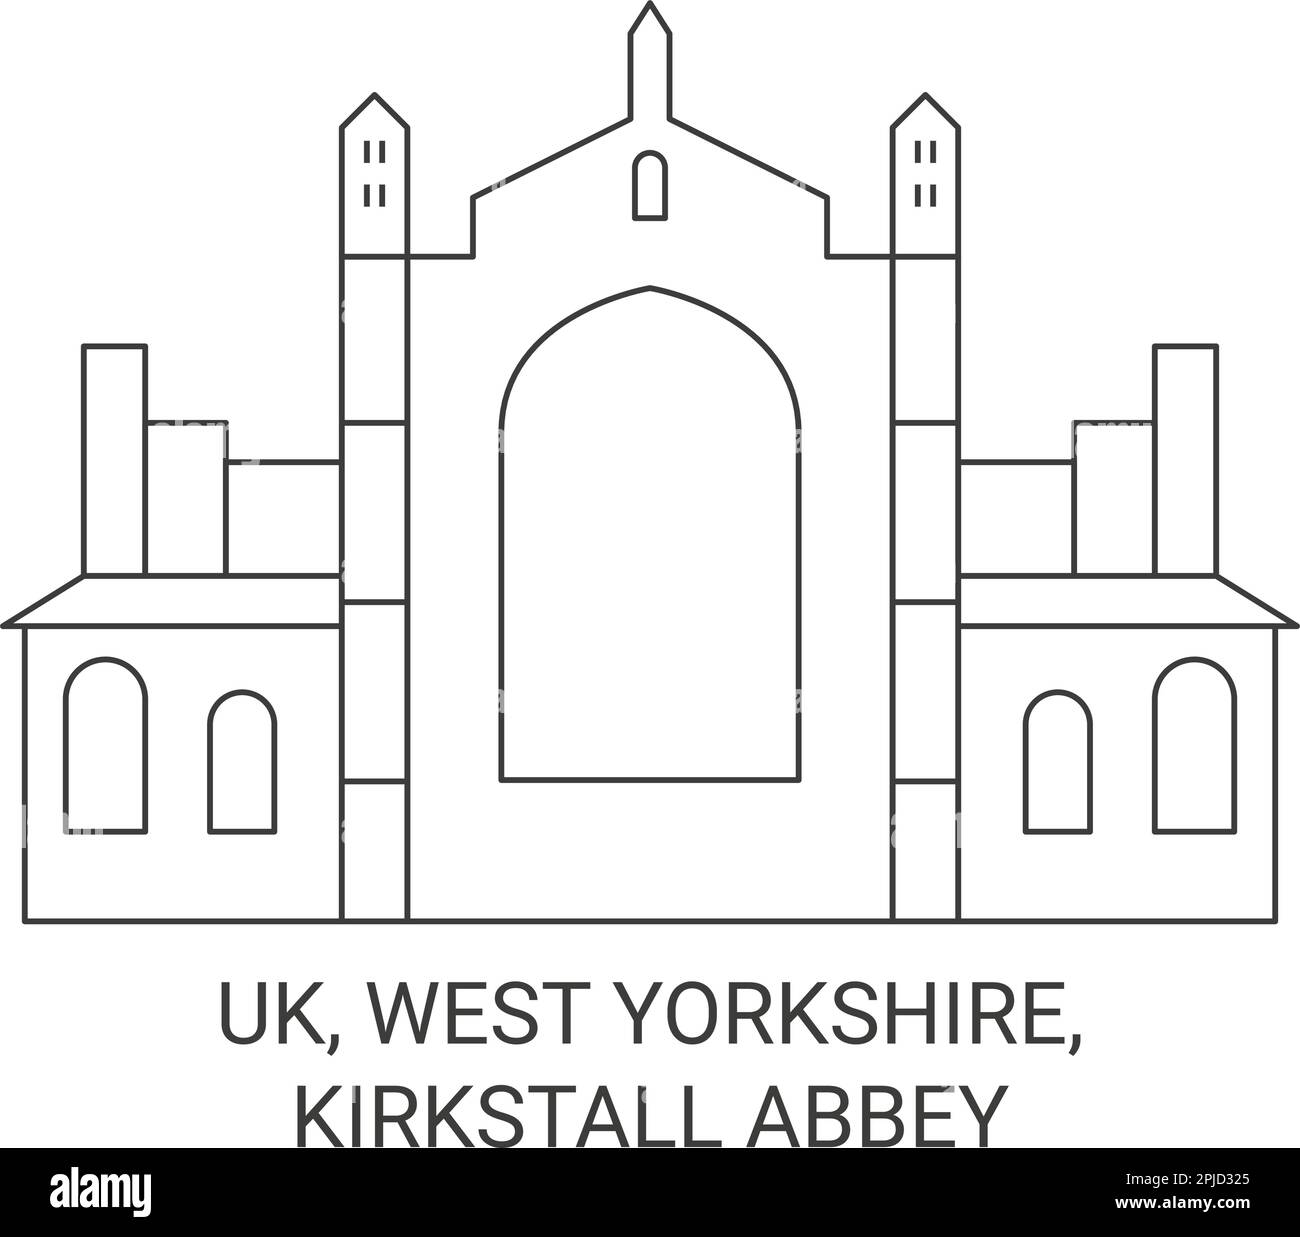 Uk, West Yorkshire, Kirkstall Abbey travel landmark vector illustration Stock Vector